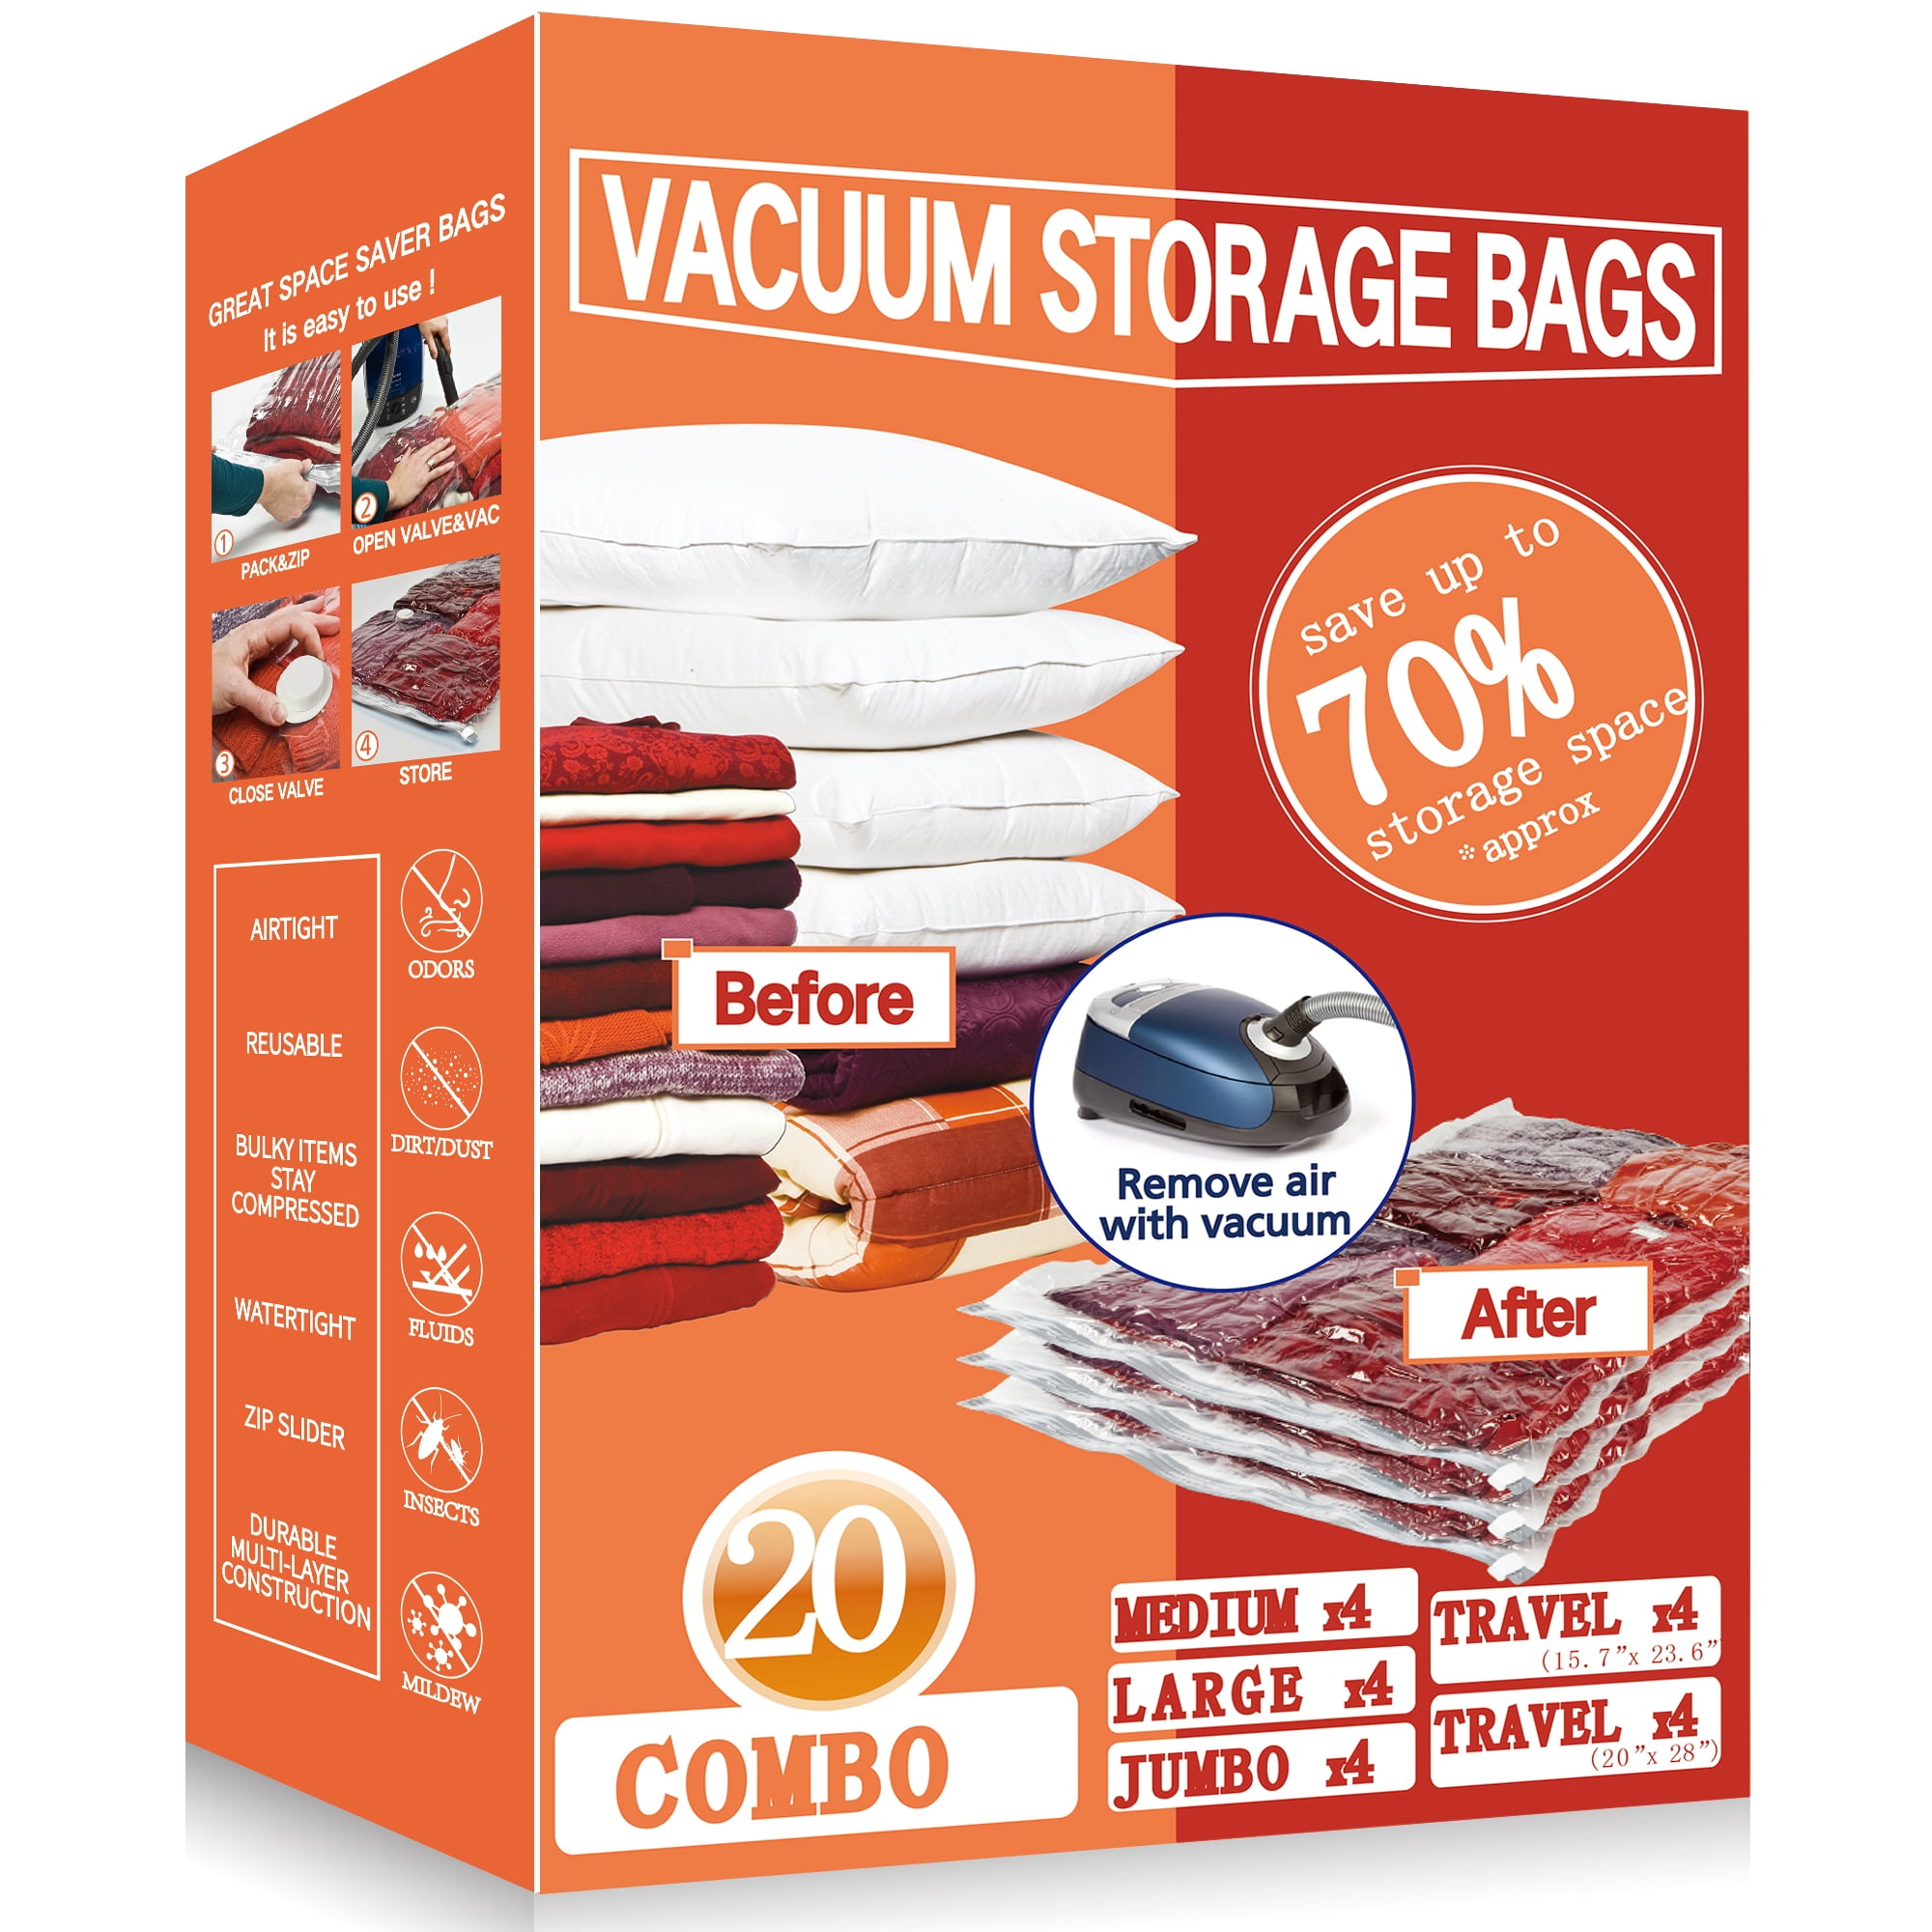 Vacpack Space Saver Bags, 20 Pack Variety Vacuum Storage Bags with